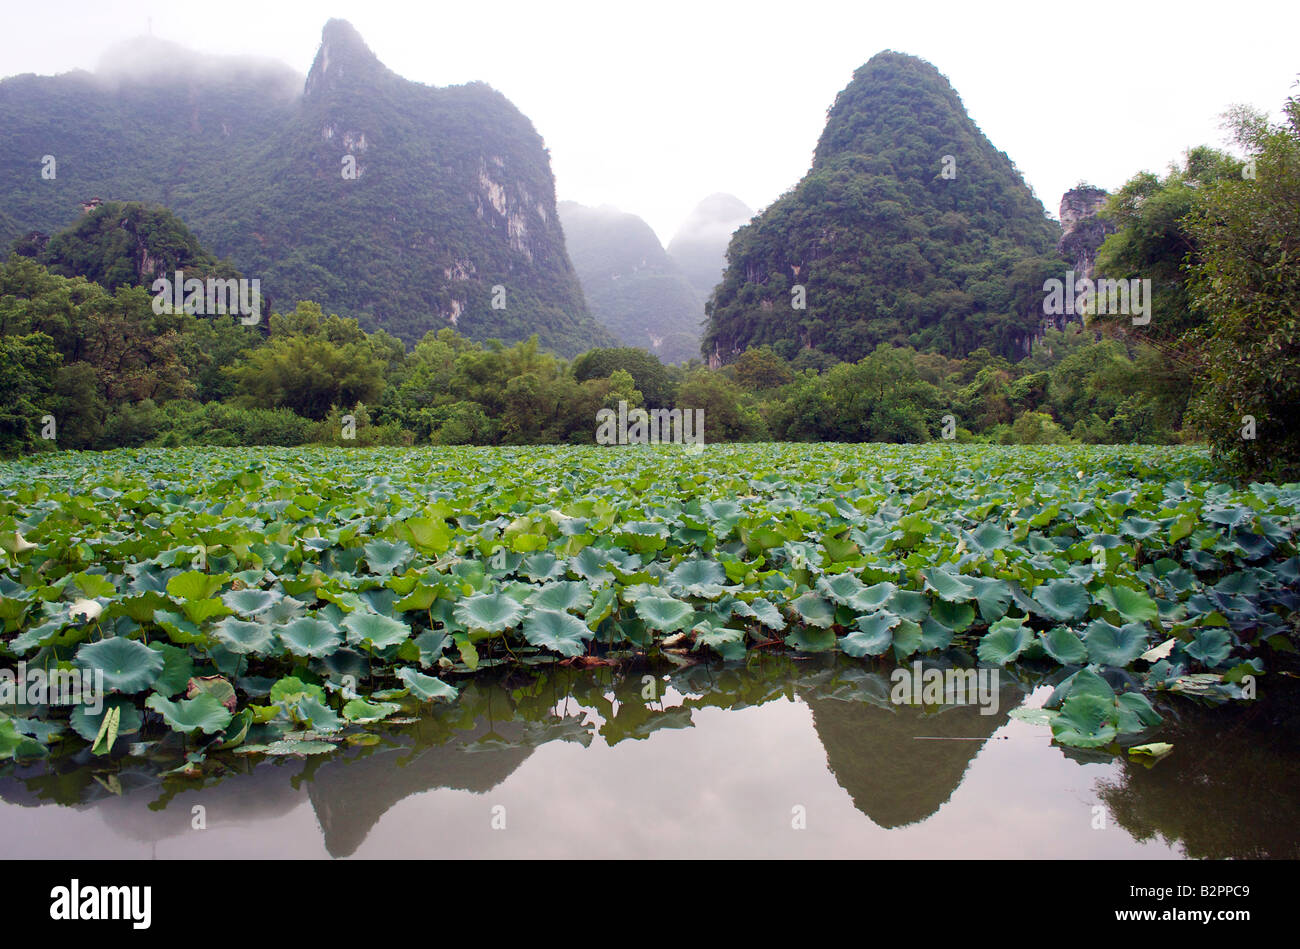 Pics calcaires entourent un lac rempli de plantes Yangshuo Guangxi Chine lotus Banque D'Images